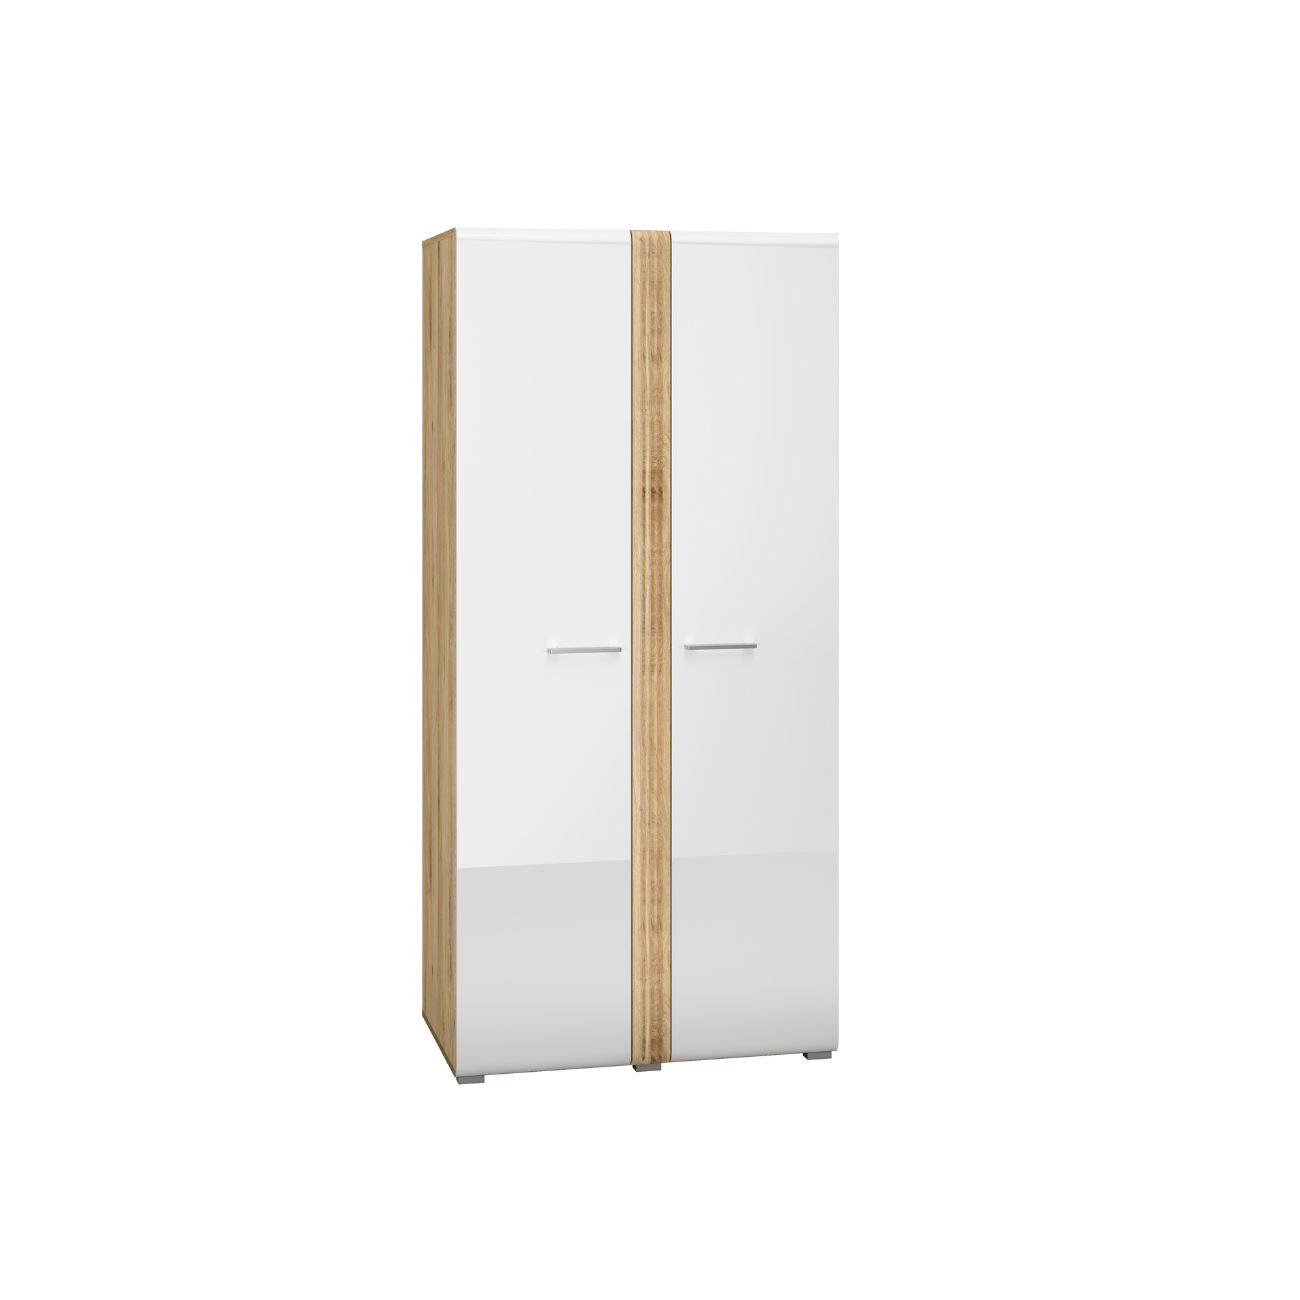 Zdjęcie przedstawiające białą szafę na ubrania Largo z frontami w białym połysku. Nowoczesna szafa na ubrania Largo dostępna w dmsm.pl